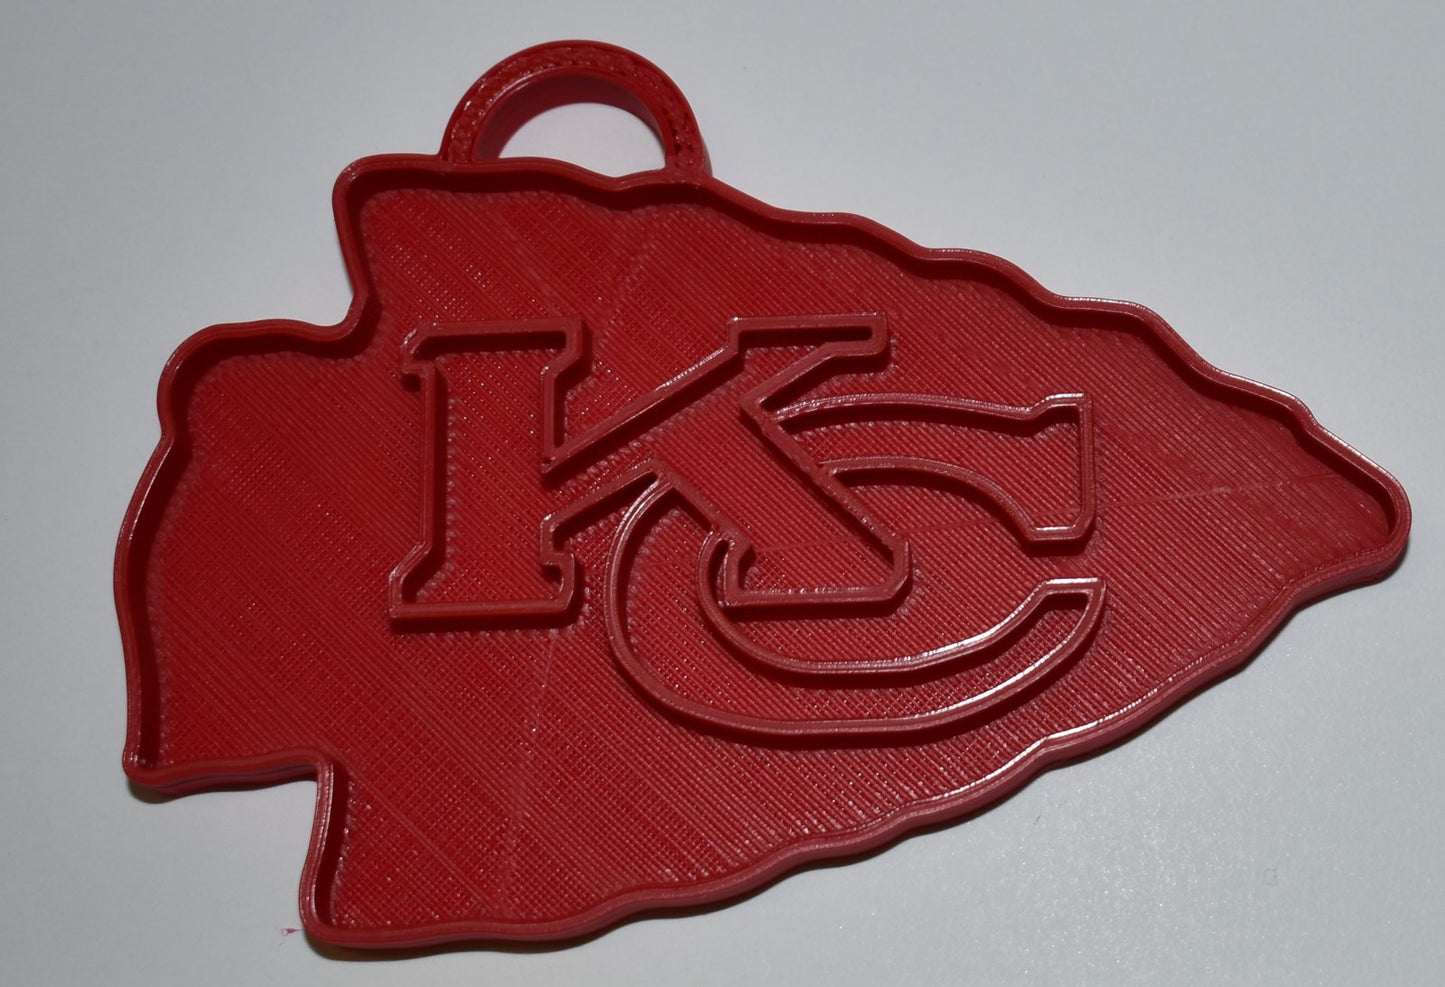 Kansas City Chiefs NFL Football Ornament Holiday Christmas Decor USA PR2071